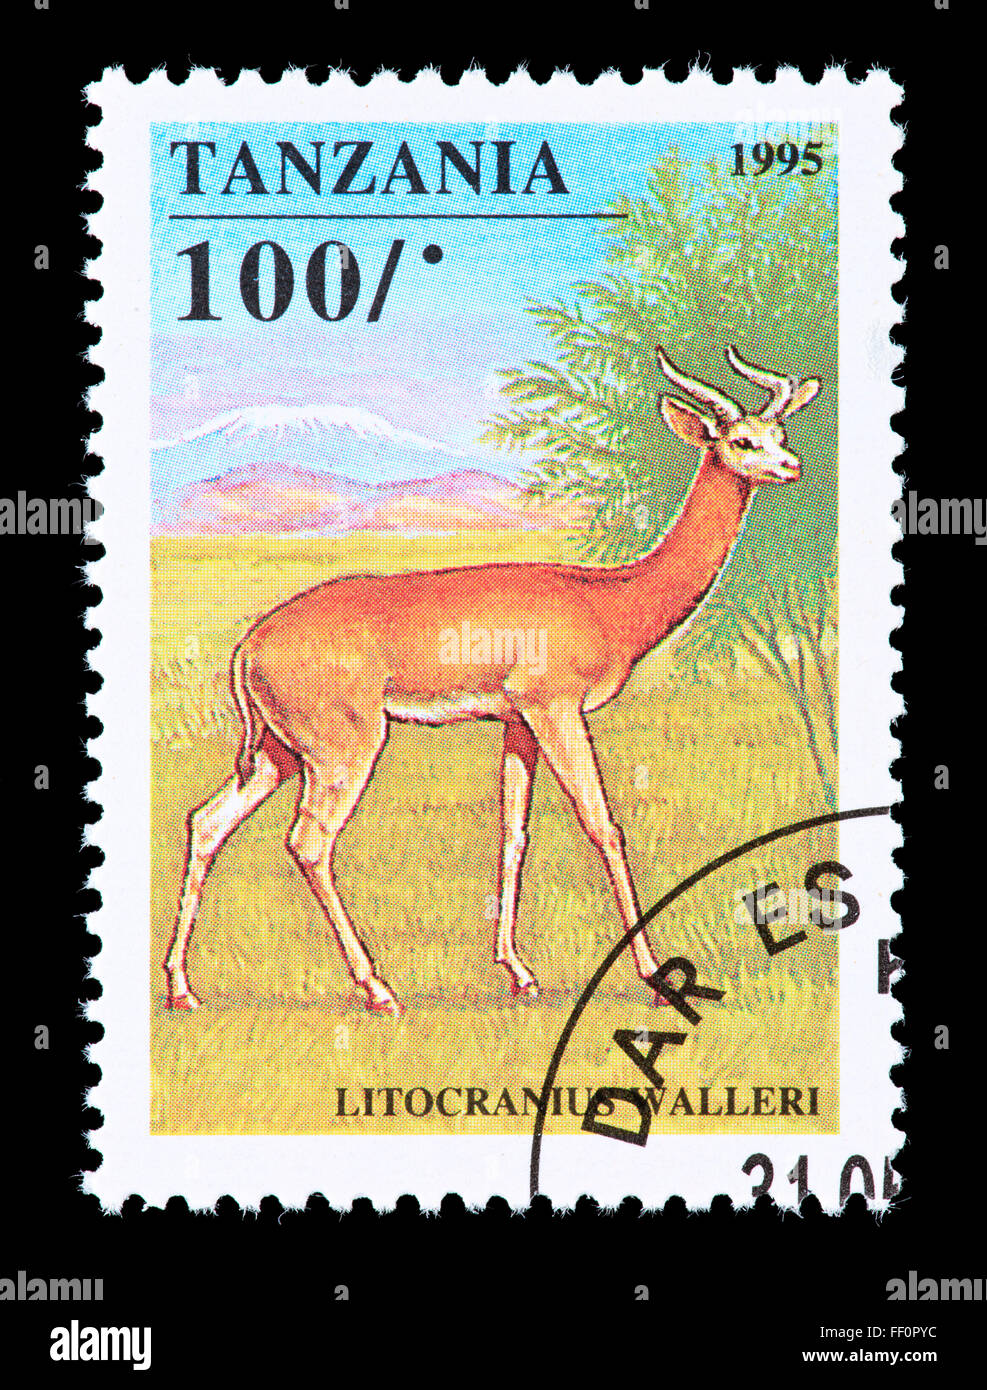 Francobollo dalla Tanzania raffigurante un Waller la gazzella o Gerenuk (Litocranius walleri). Foto Stock